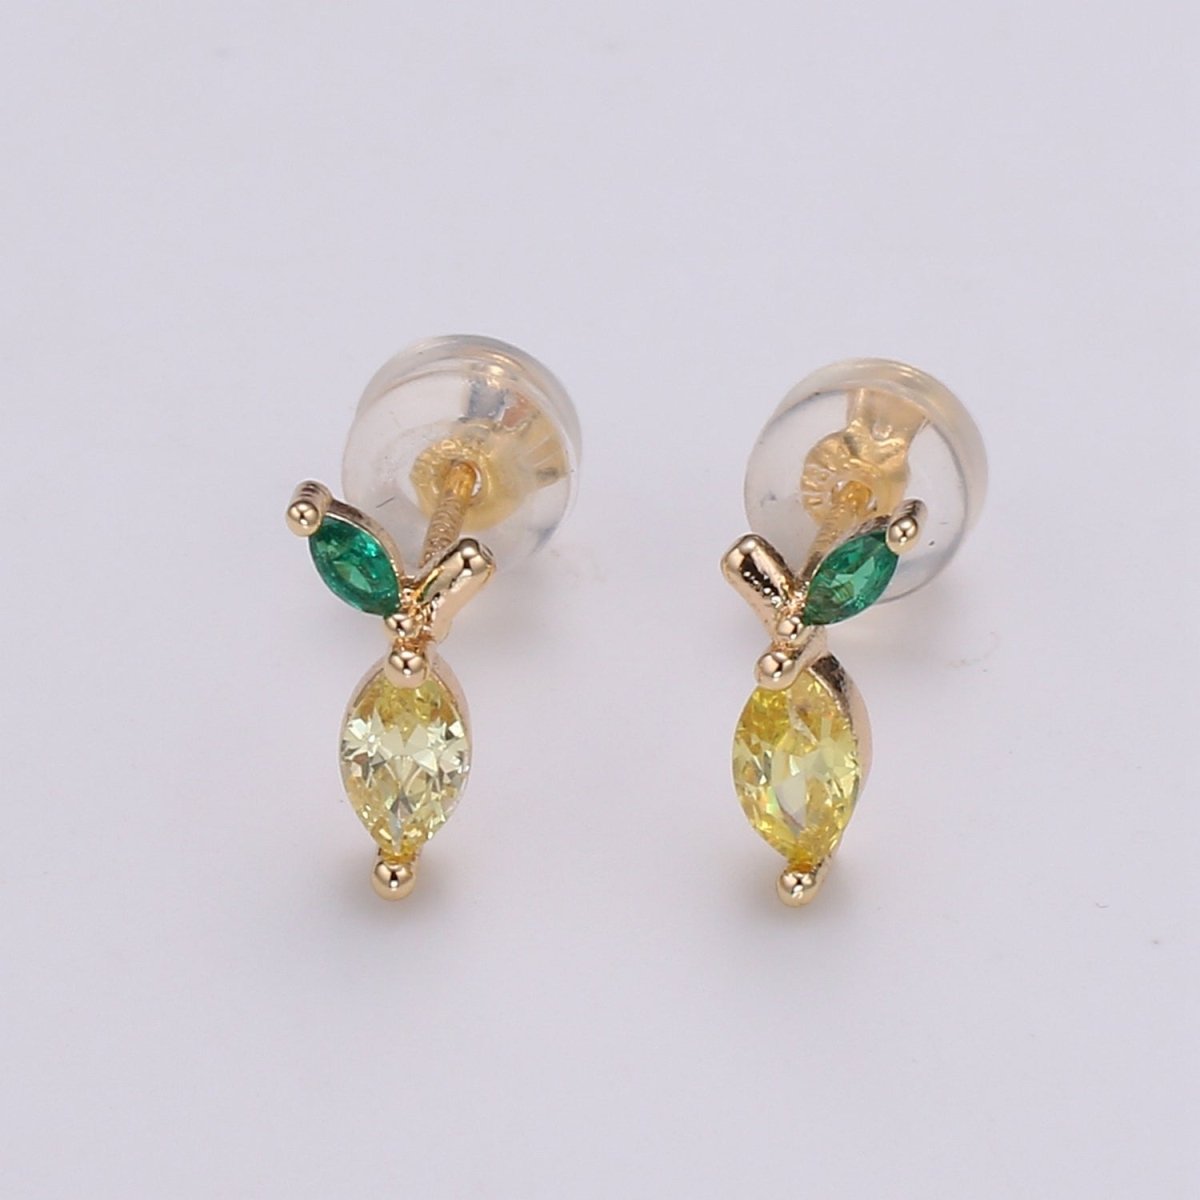 Gold Lemon Stud Earring, Crystal Lemon Studs, Lemon Fruit Earring, Minimalist Earring, Dainty Earrings for Girls, Gift P-018 - DLUXCA